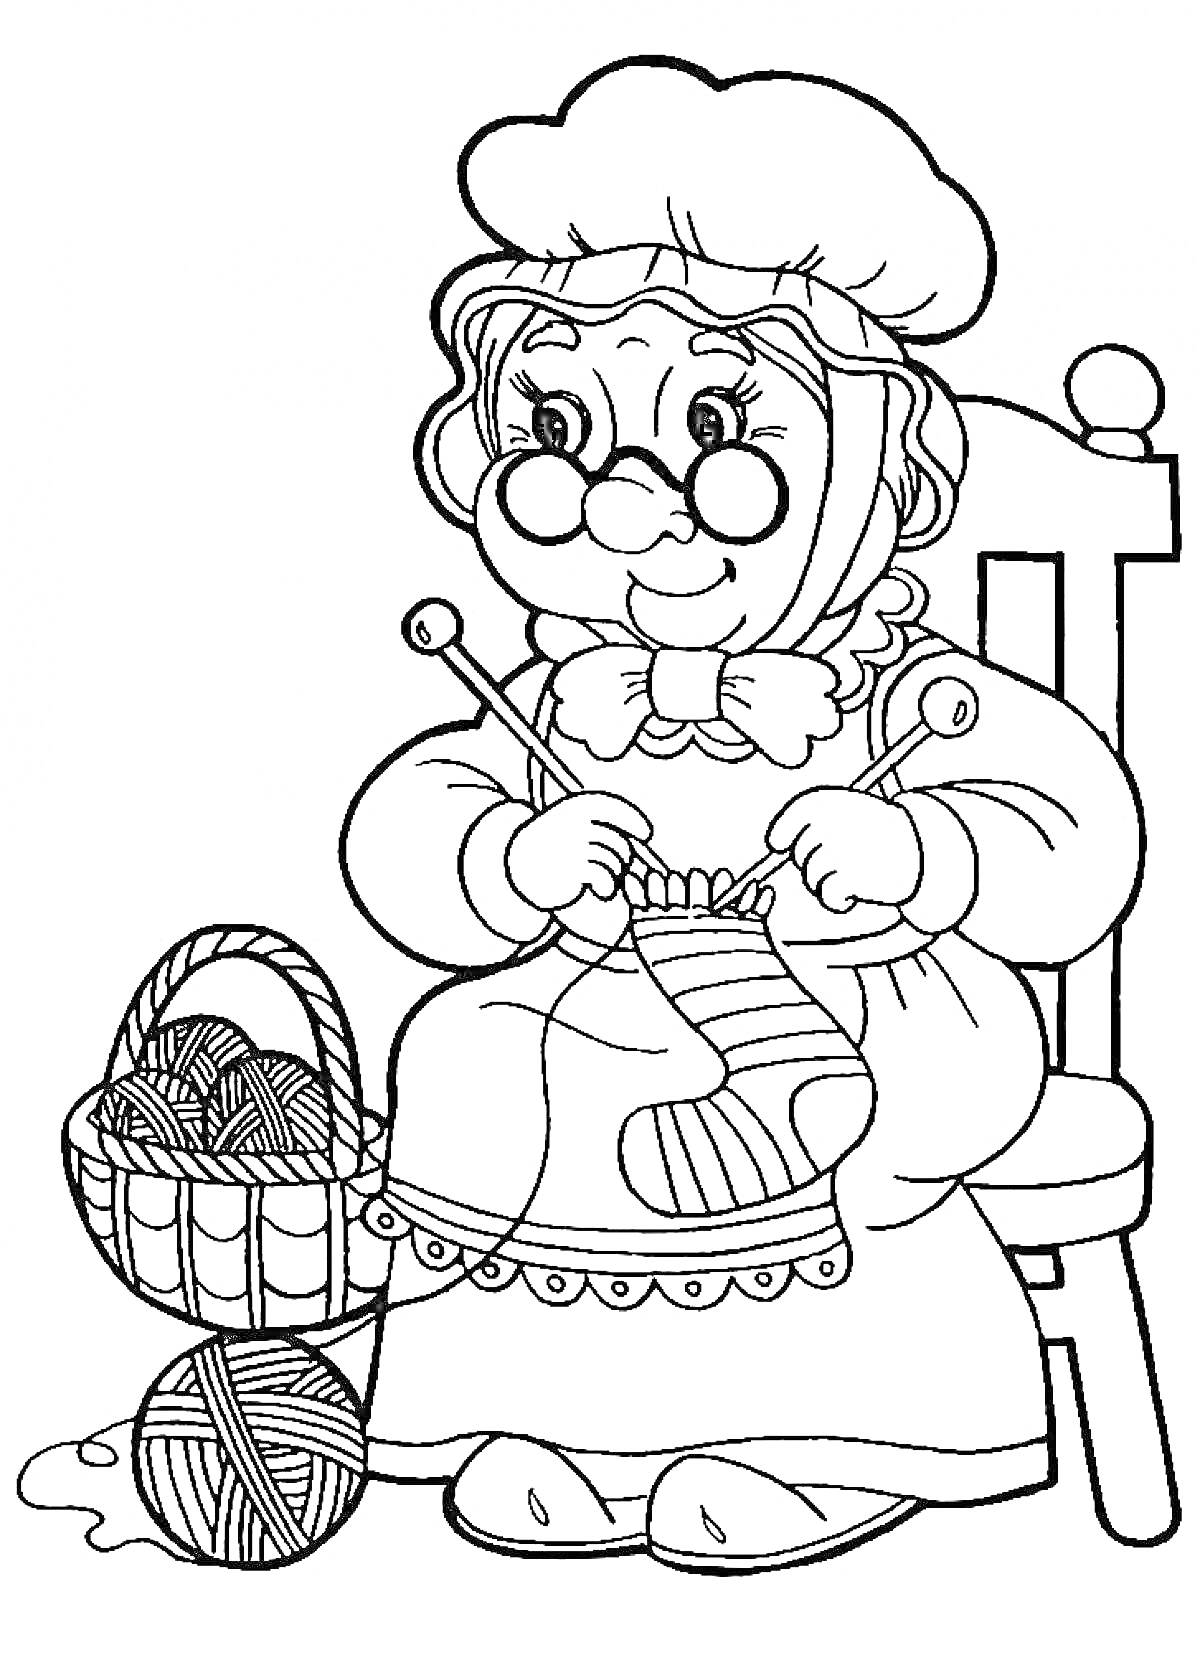 Раскраска Бабушка в очках и чепце вяжет на спицах, сидя на стуле с корзиной клубков пряжи рядом